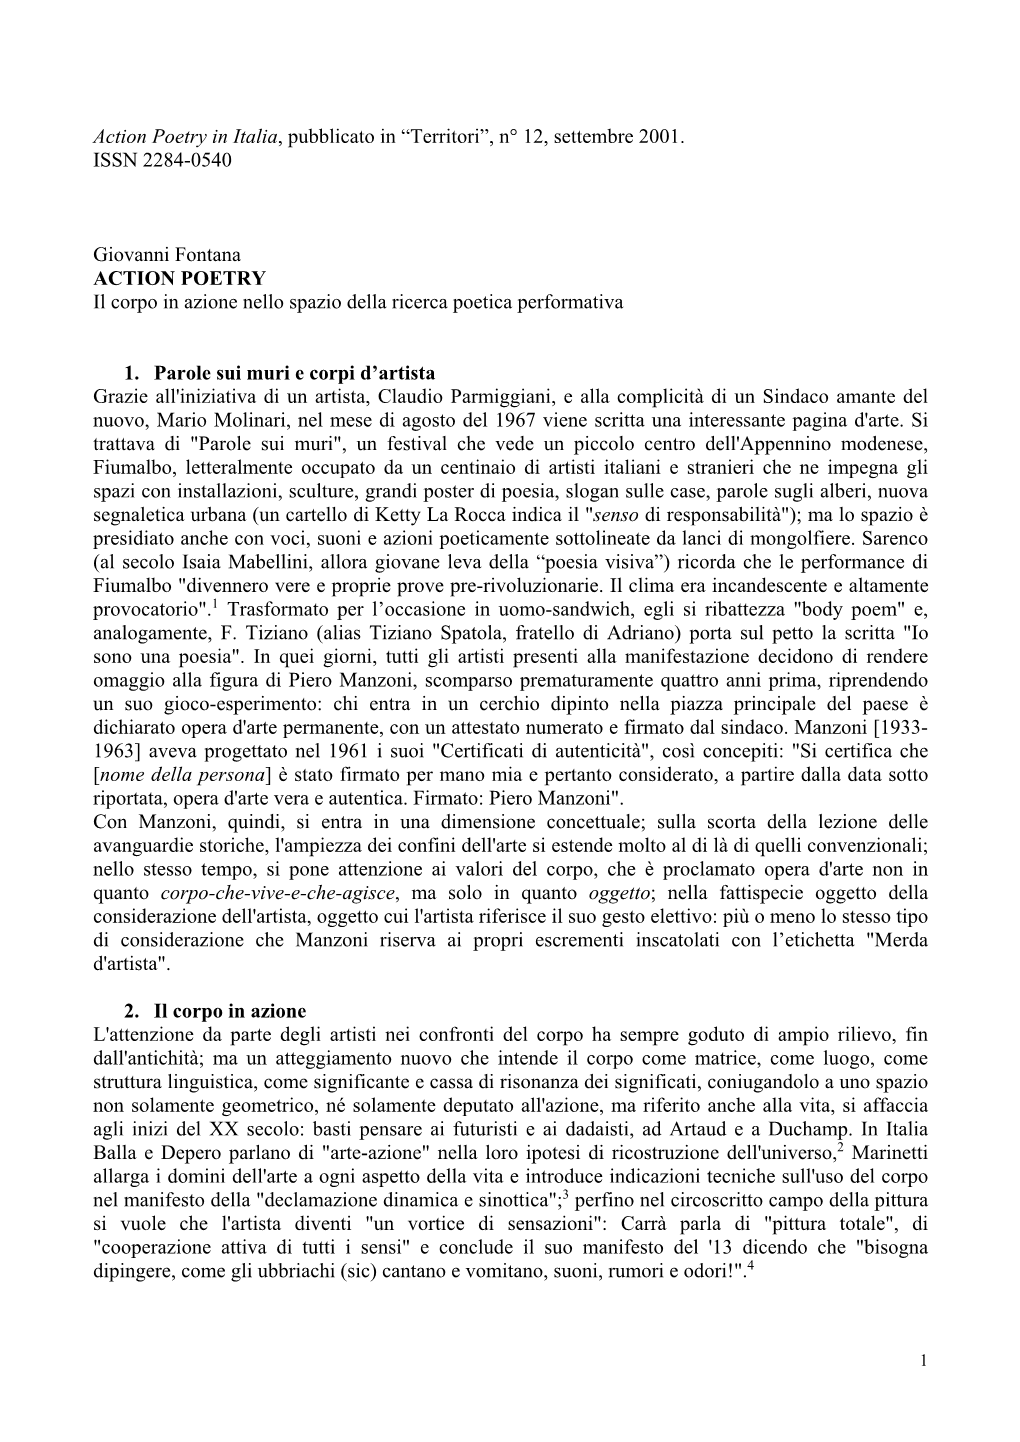 Action Poetry in Italia, Pubblicato in “Territori”, N° 12, Settembre 2001